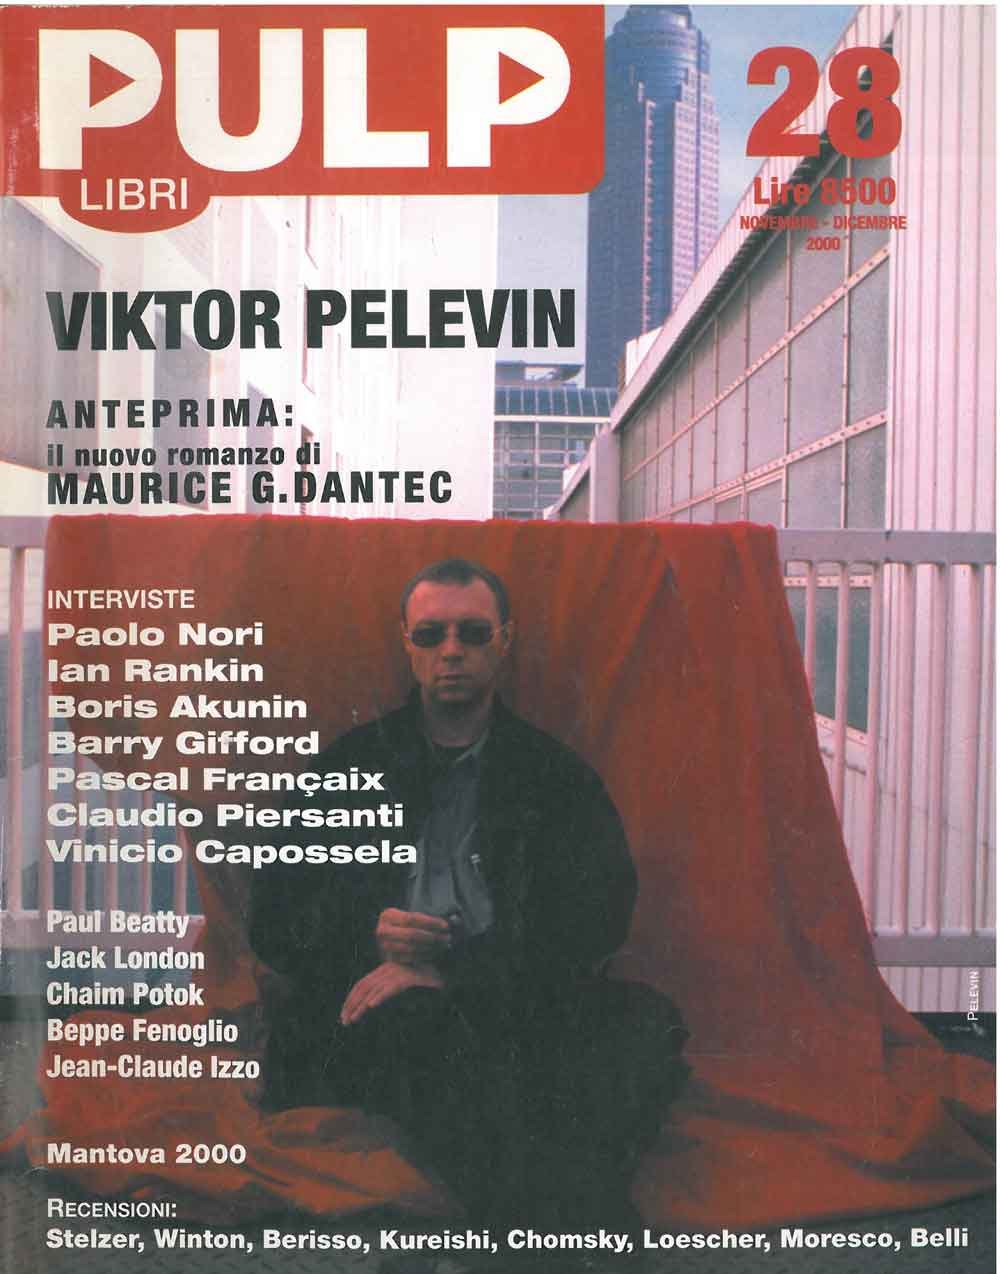 Pulp. Libri. bimestrale. N. 28, novembre-dicembre 2000